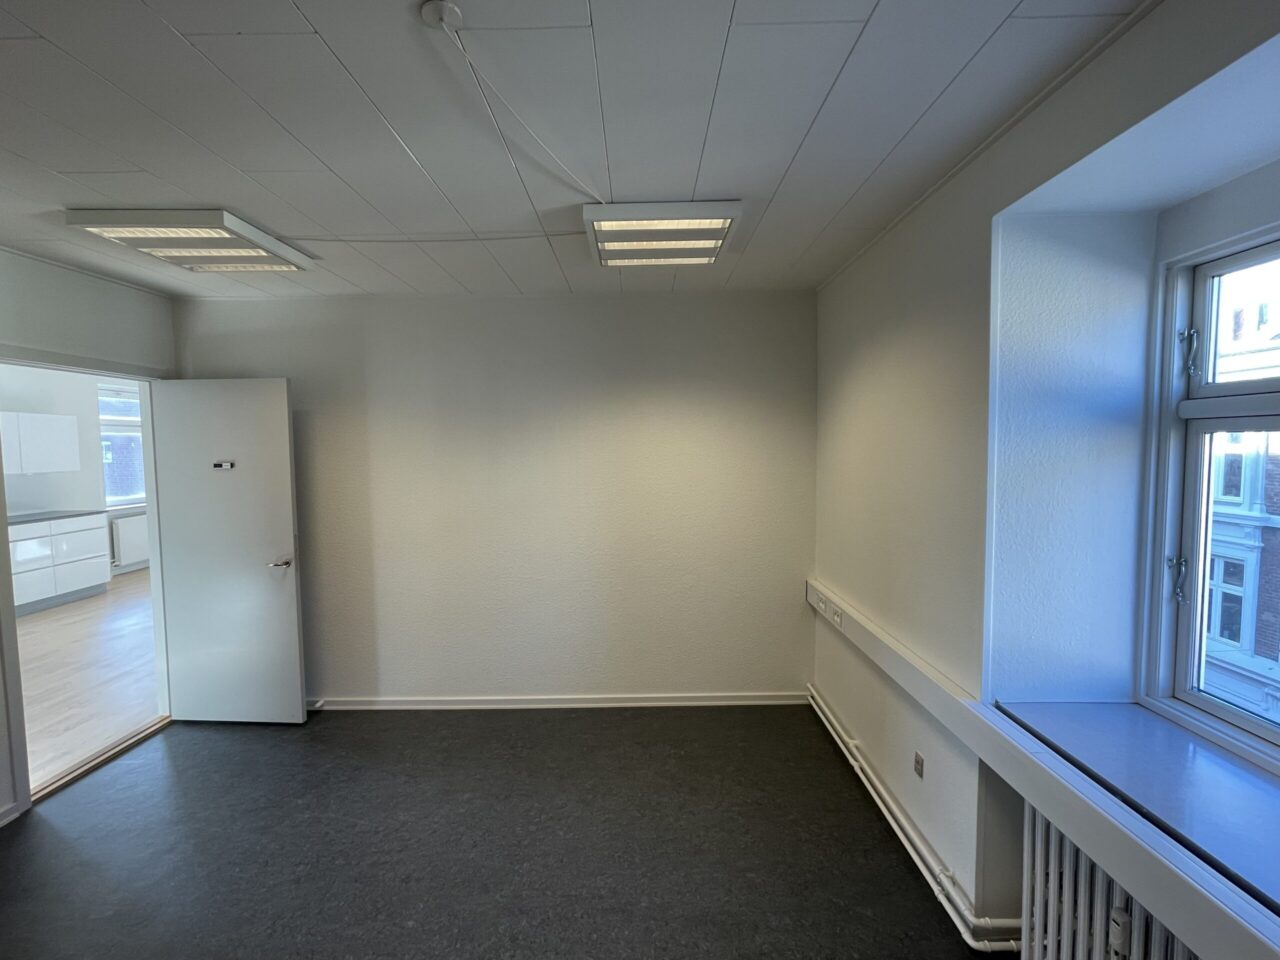 Lokaler til leje i Kolding - Lokale med hvide vægge og sort gulv med et vindue